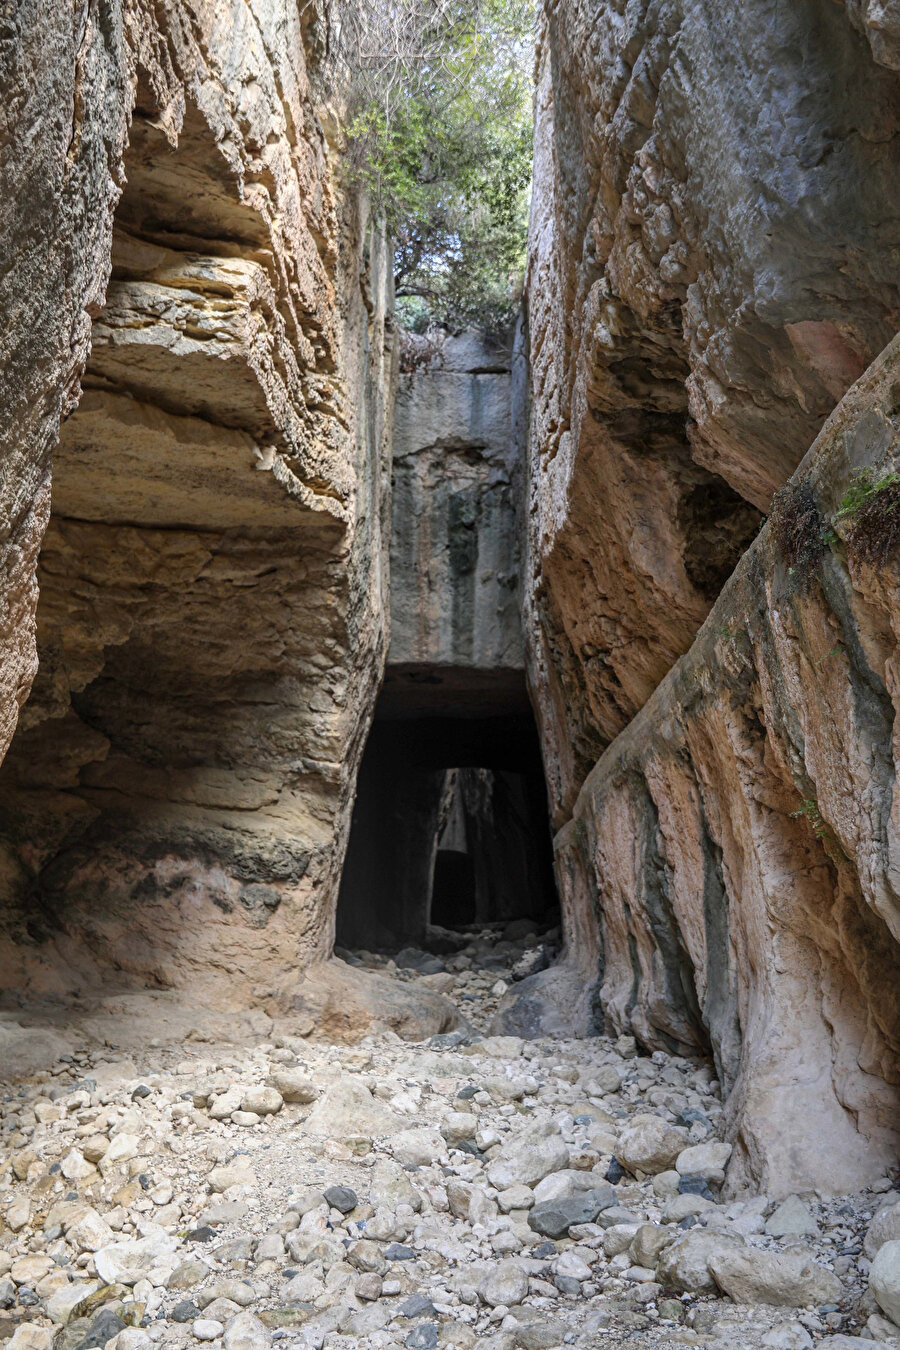 Tarihi 2 bin yıl öncesine dayanan, Roma döneminde yapılan tünelin inşasında Roma lejyonları ve köleler çalışmıştır. Tümüyle dağ içine oyulan tünel bin 380 metre uzunluğunda, 7 metre yüksekliğinde ve 6 metre genişliğindedir. 